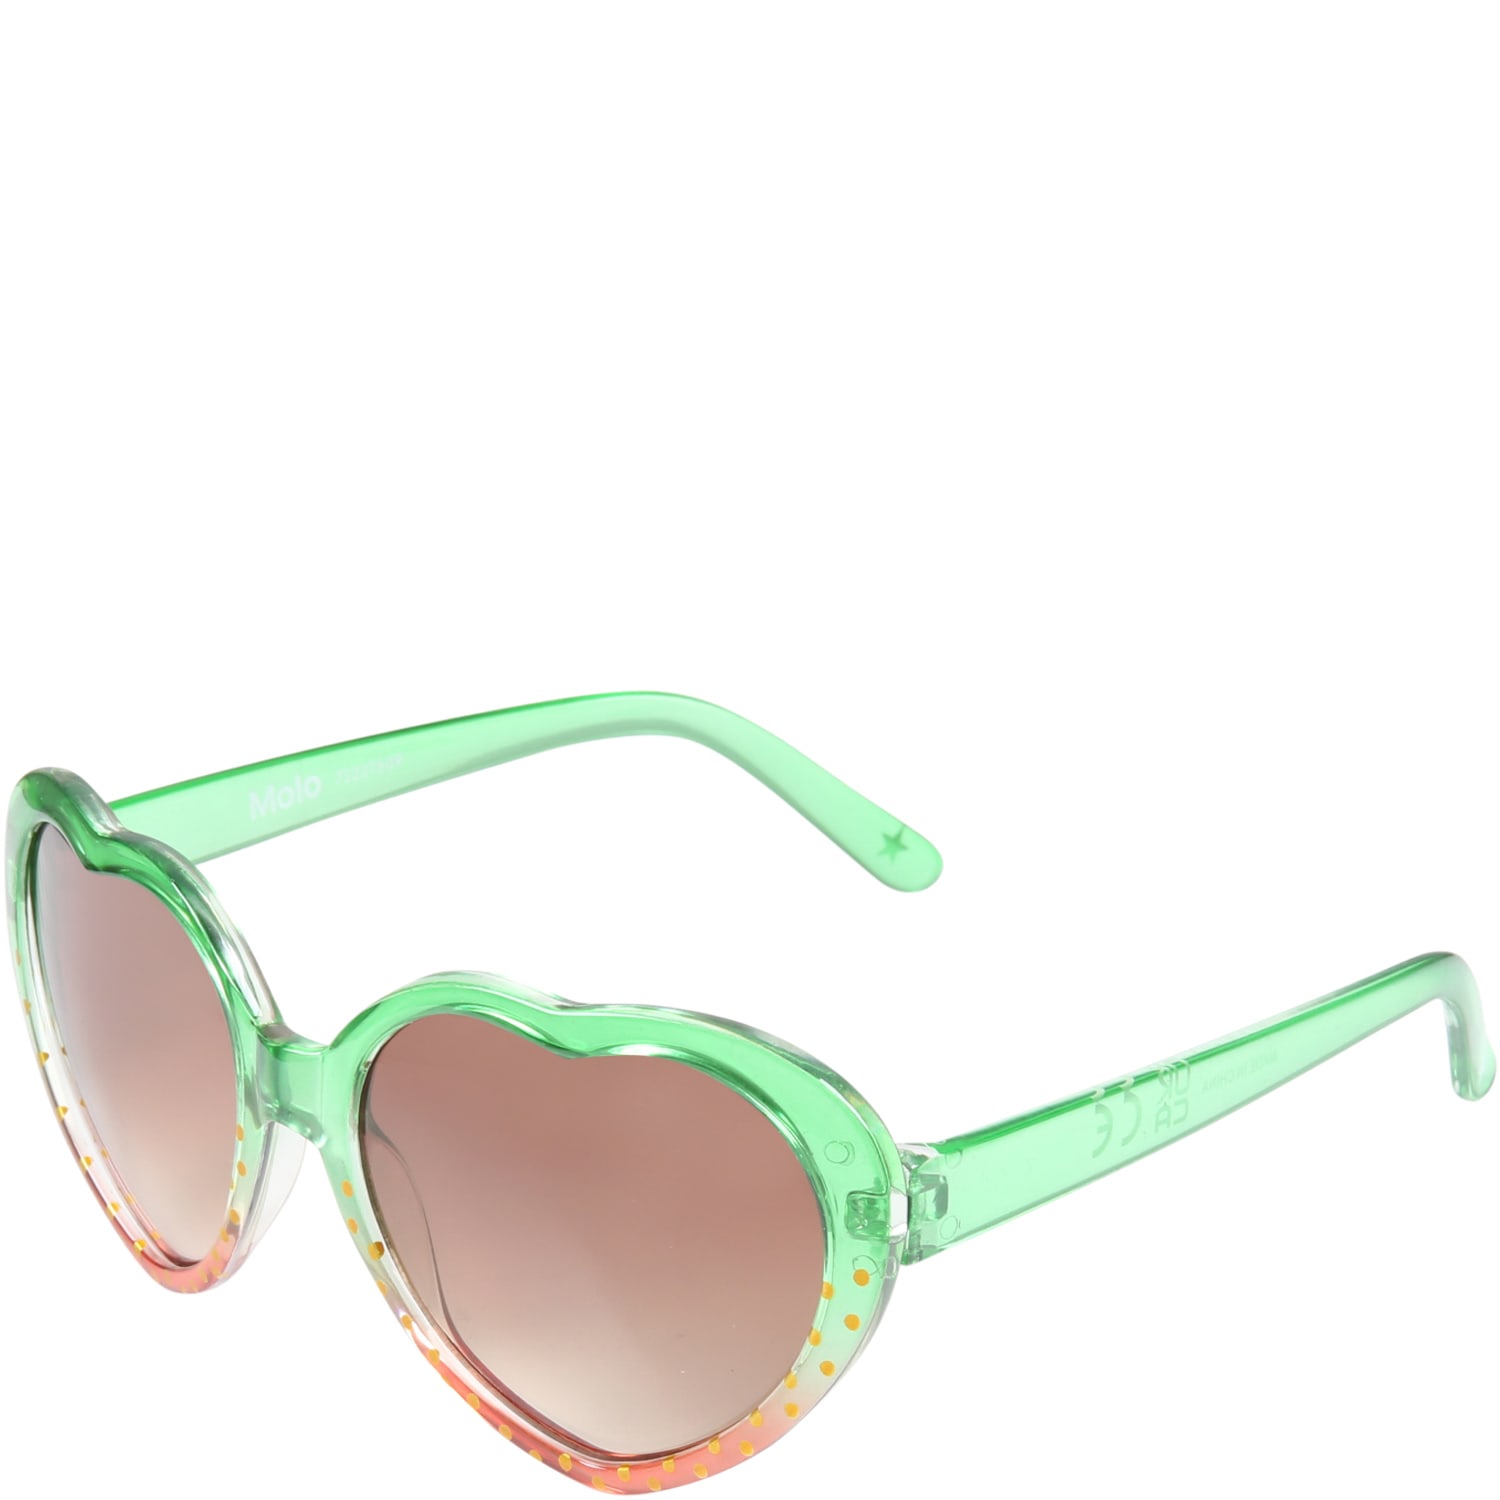 Molo Multicolor Sunglasses strawberry For Girl